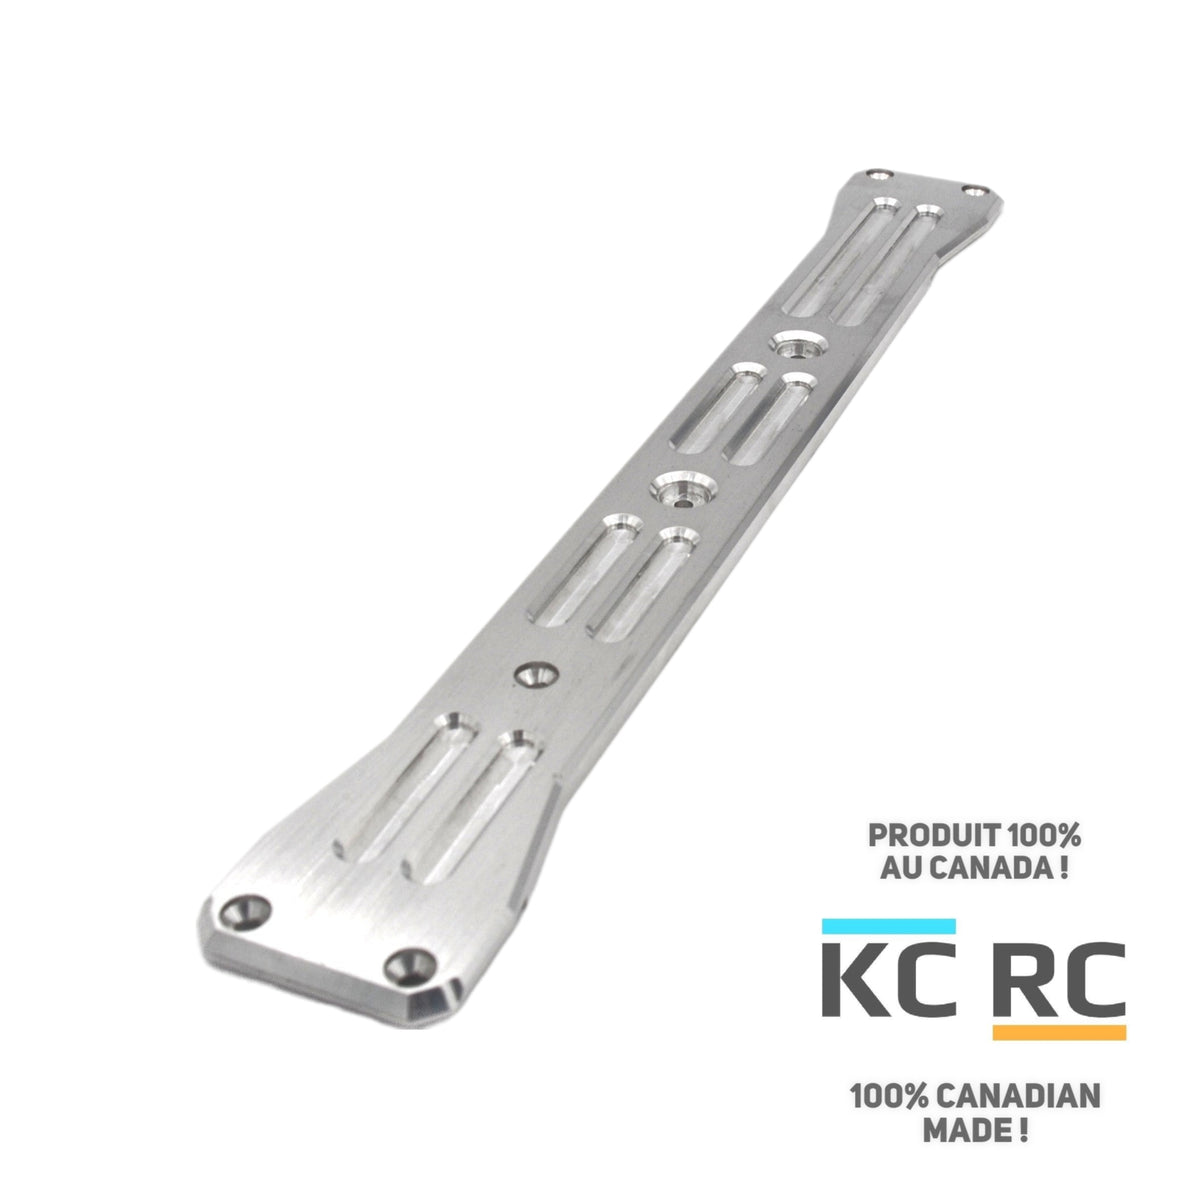 Plaque de protection KC RC 7075 T6 ( 6,35 mm ) pour Outcast 4s v2 (T1, T2)